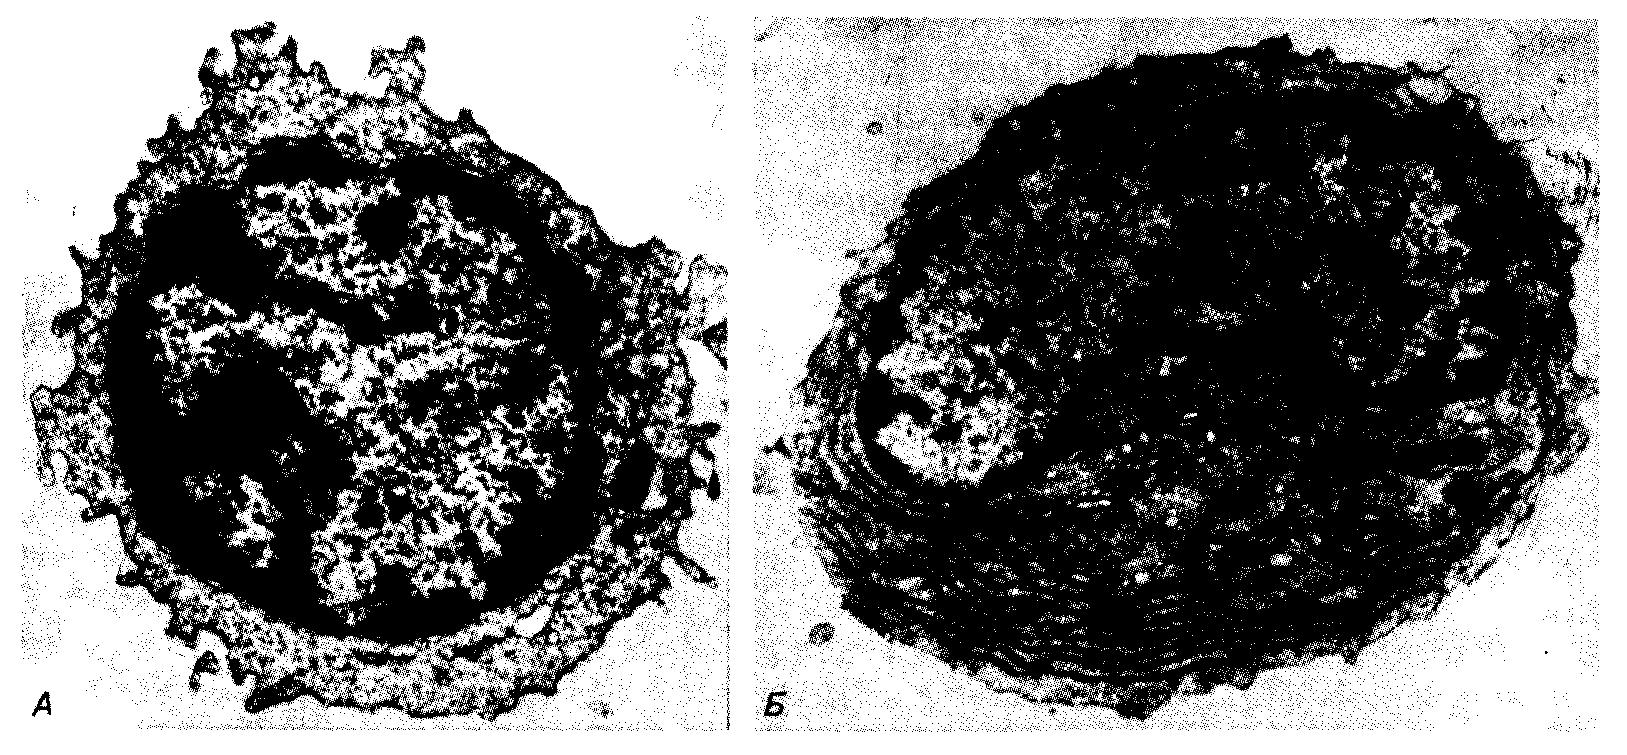 Электронные микрофотографии, иллюстрирующие различие ультраструктуры малого В-лимфоцита и незрелой плазматической клетки, выделенной из периферической крови человека.